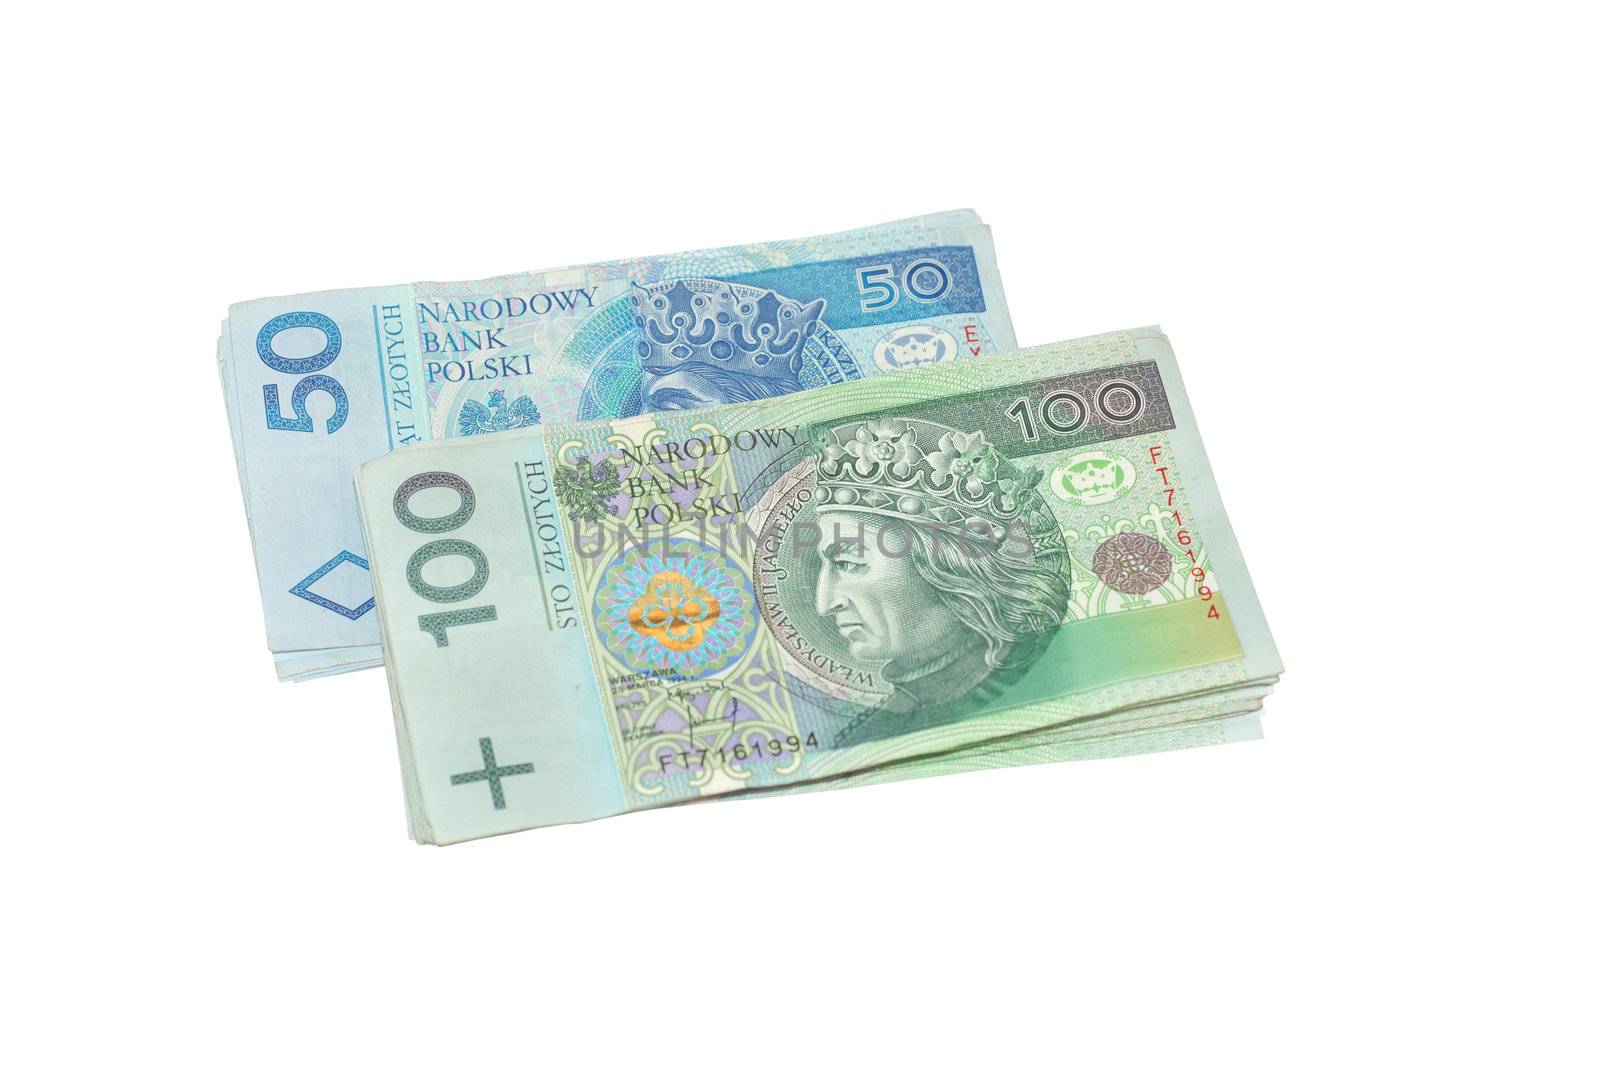 Polish money. Polskie pieniądze by wojciechkozlowski